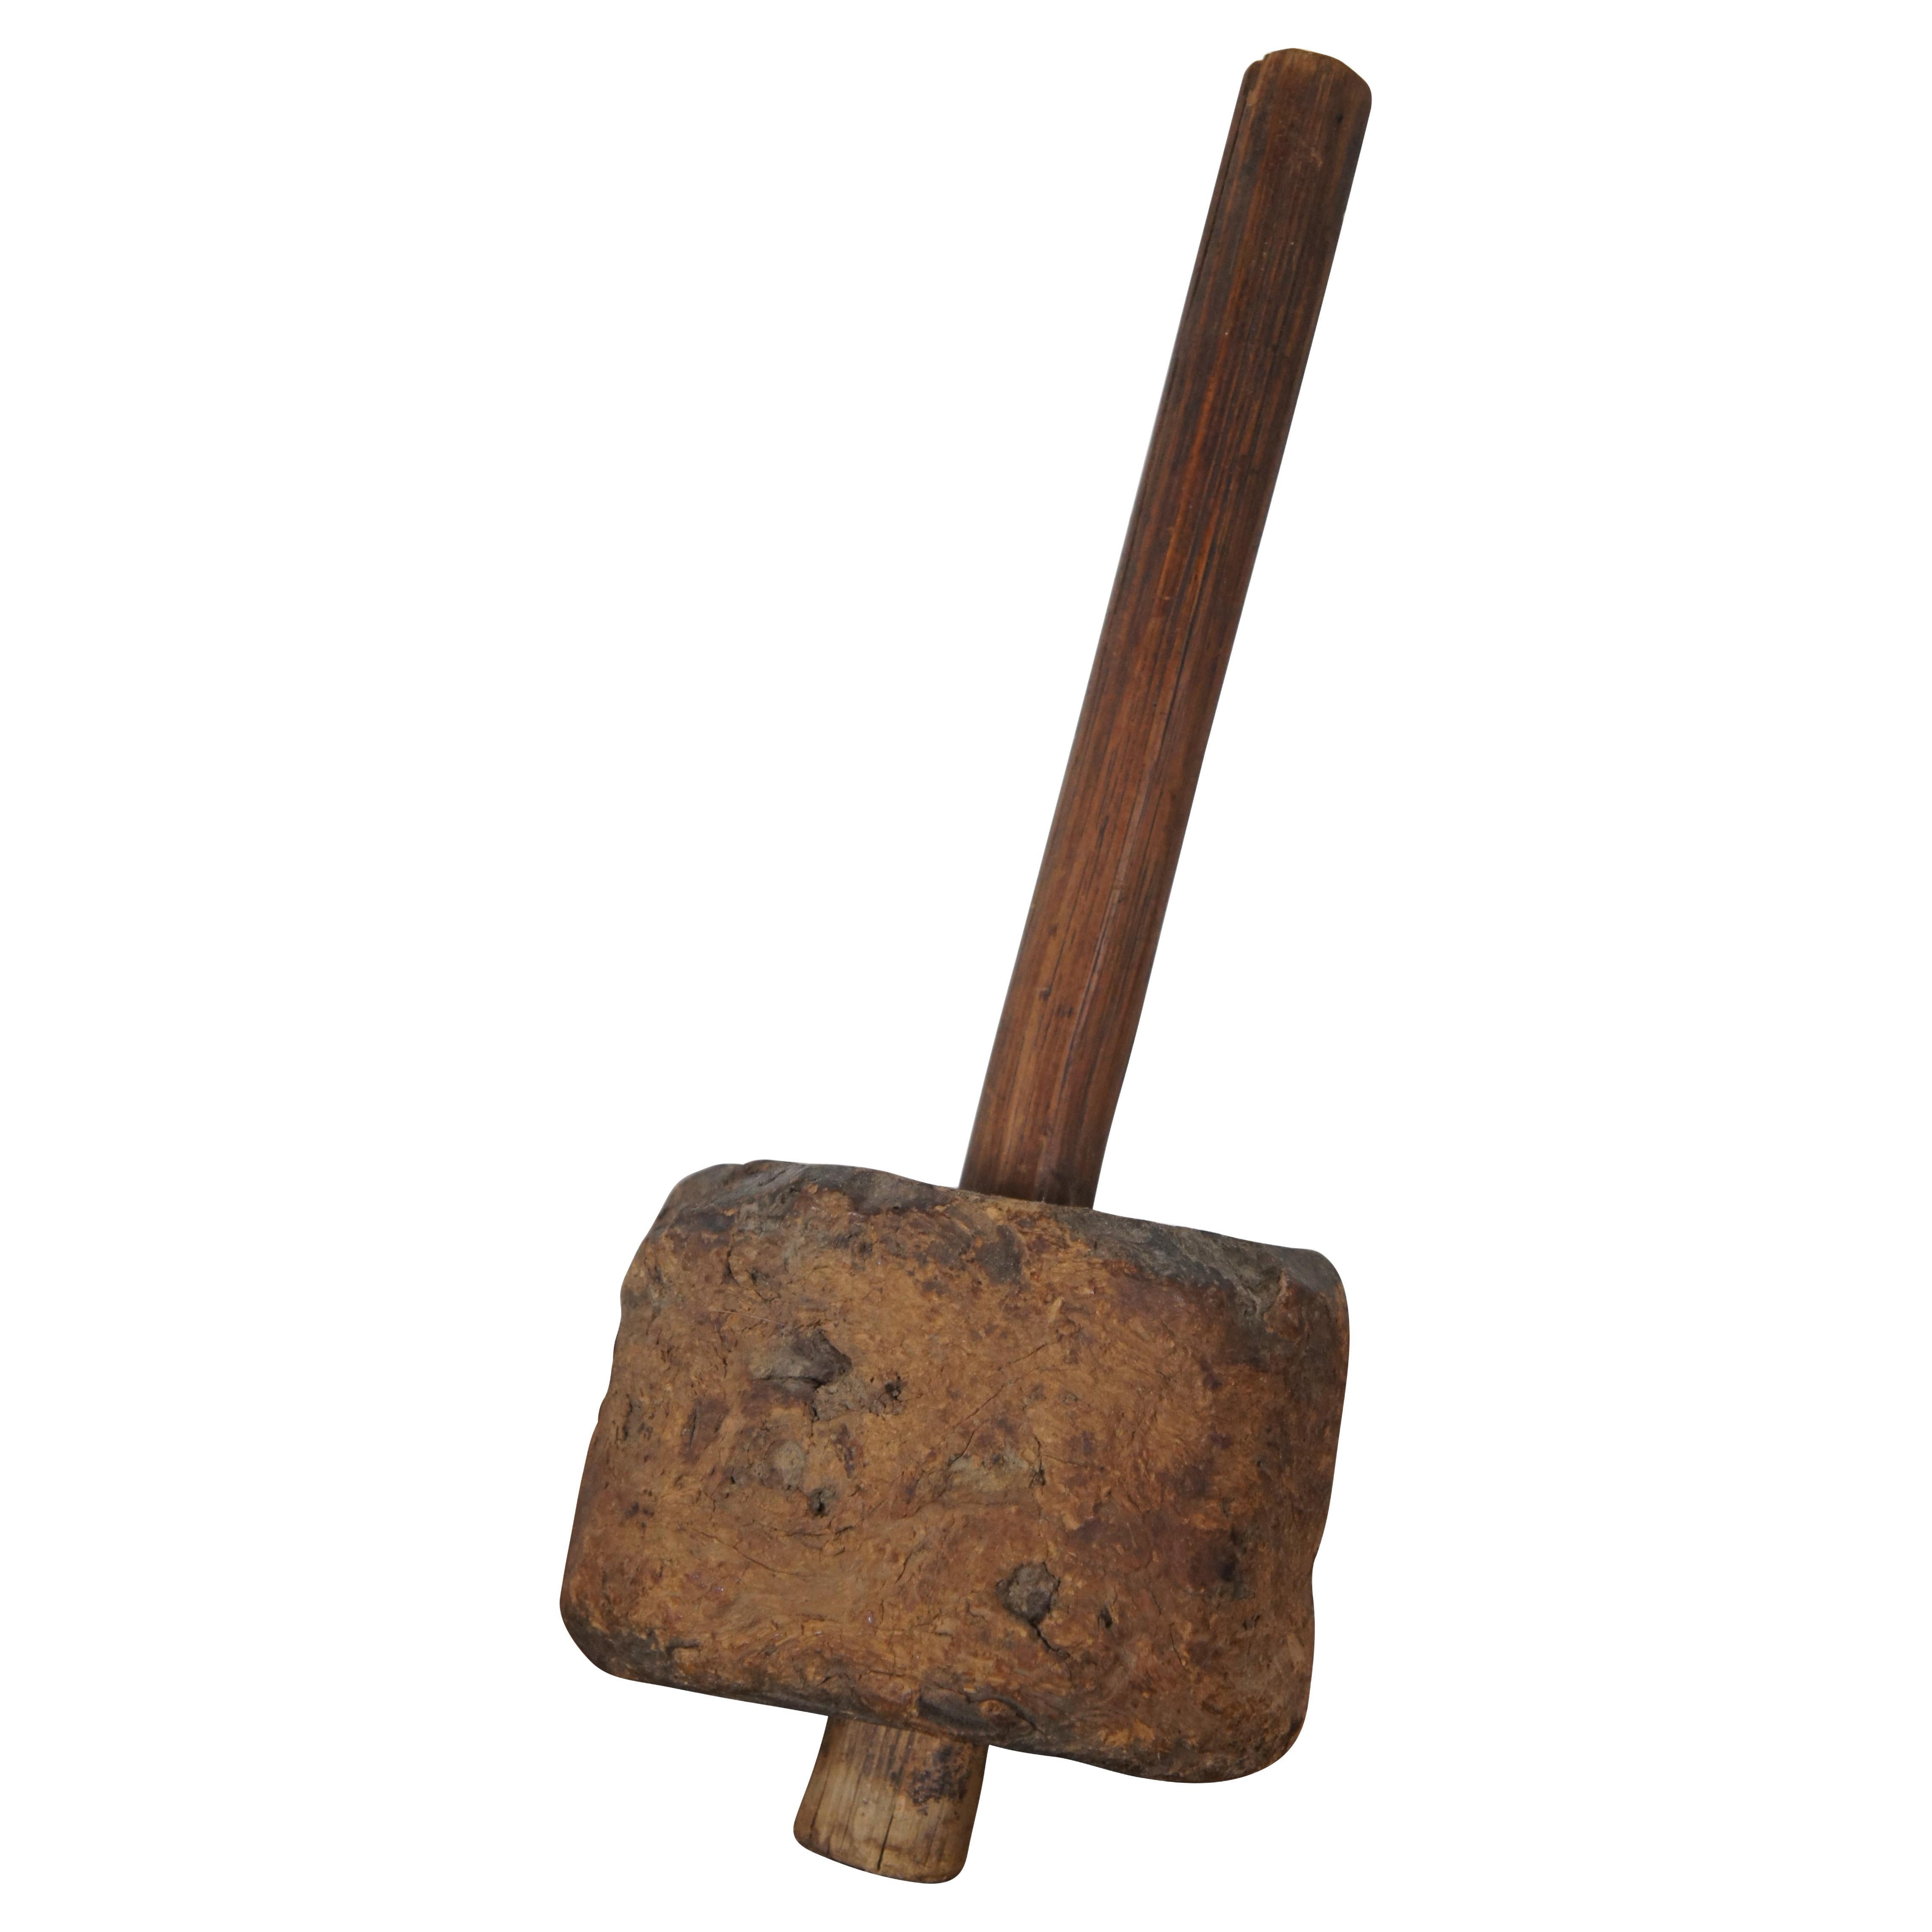 Antique Primitive Rustic Burl Wood Sledge Hammer Carpenter Mallet For Sale